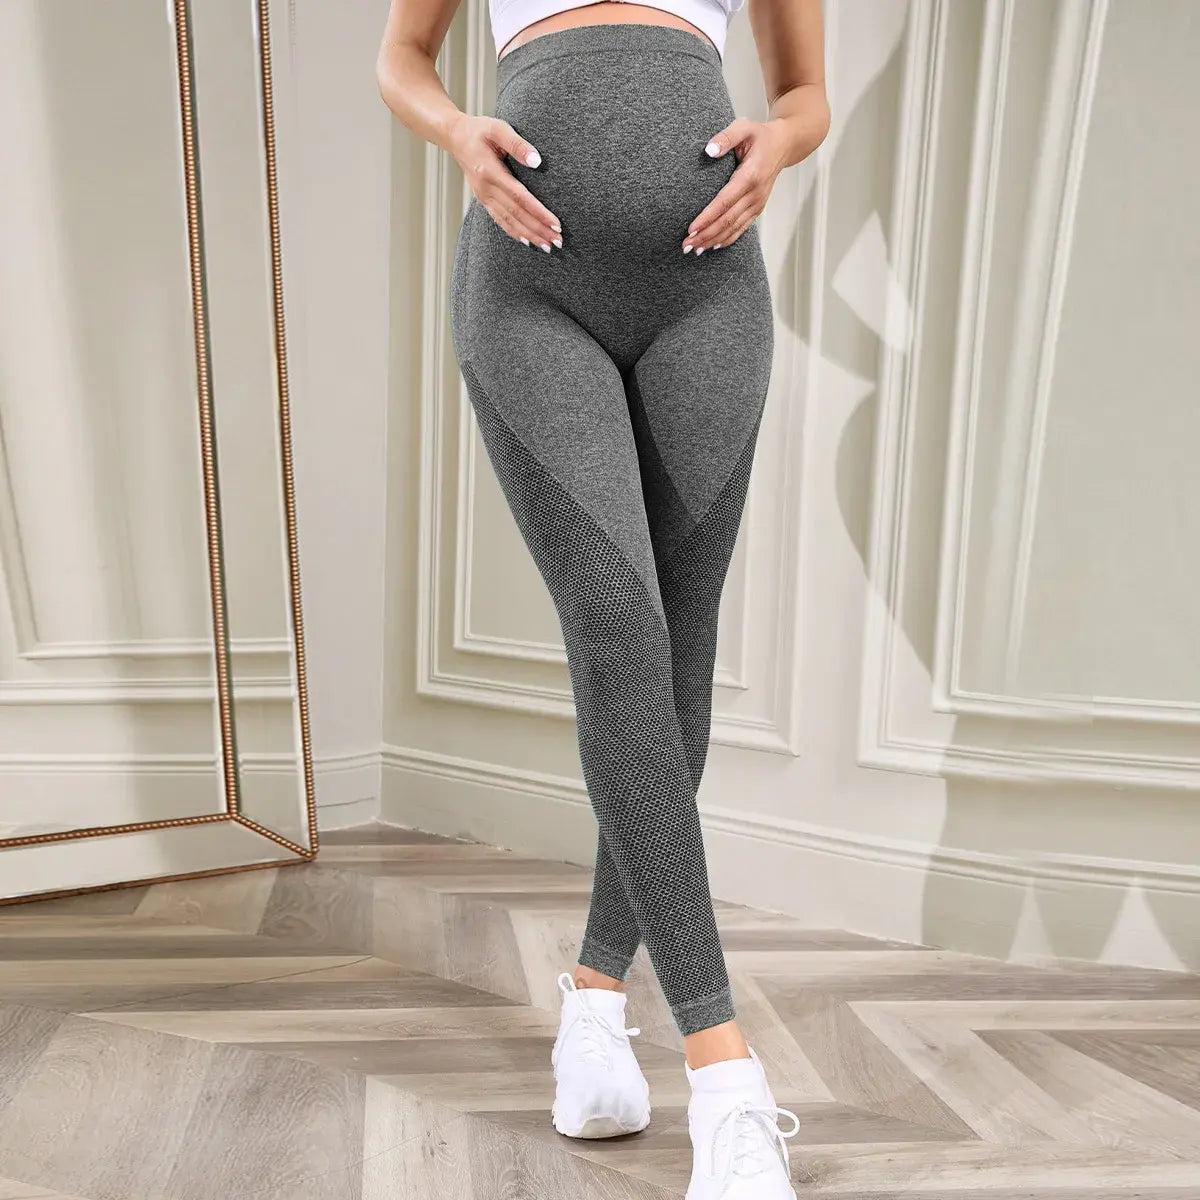 Pregnant Women's Yoga Pants/ leggings cómodos para mujeres embarazadas.